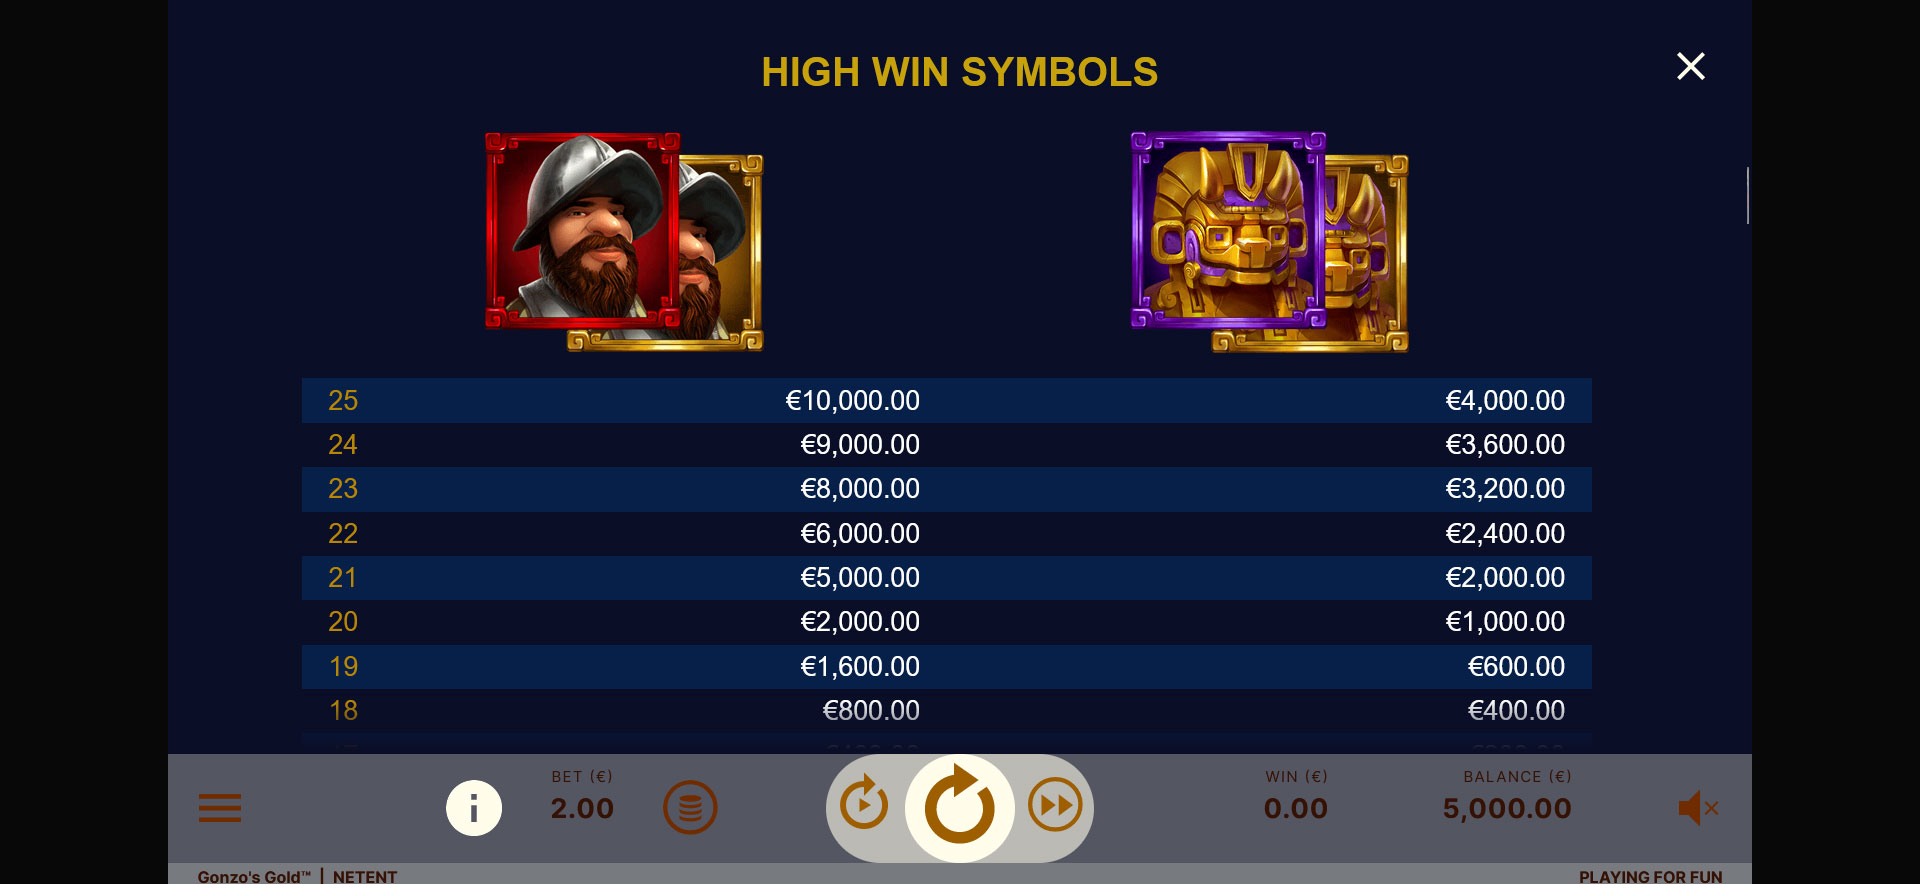 simboli della slot online Gonzo's Gold